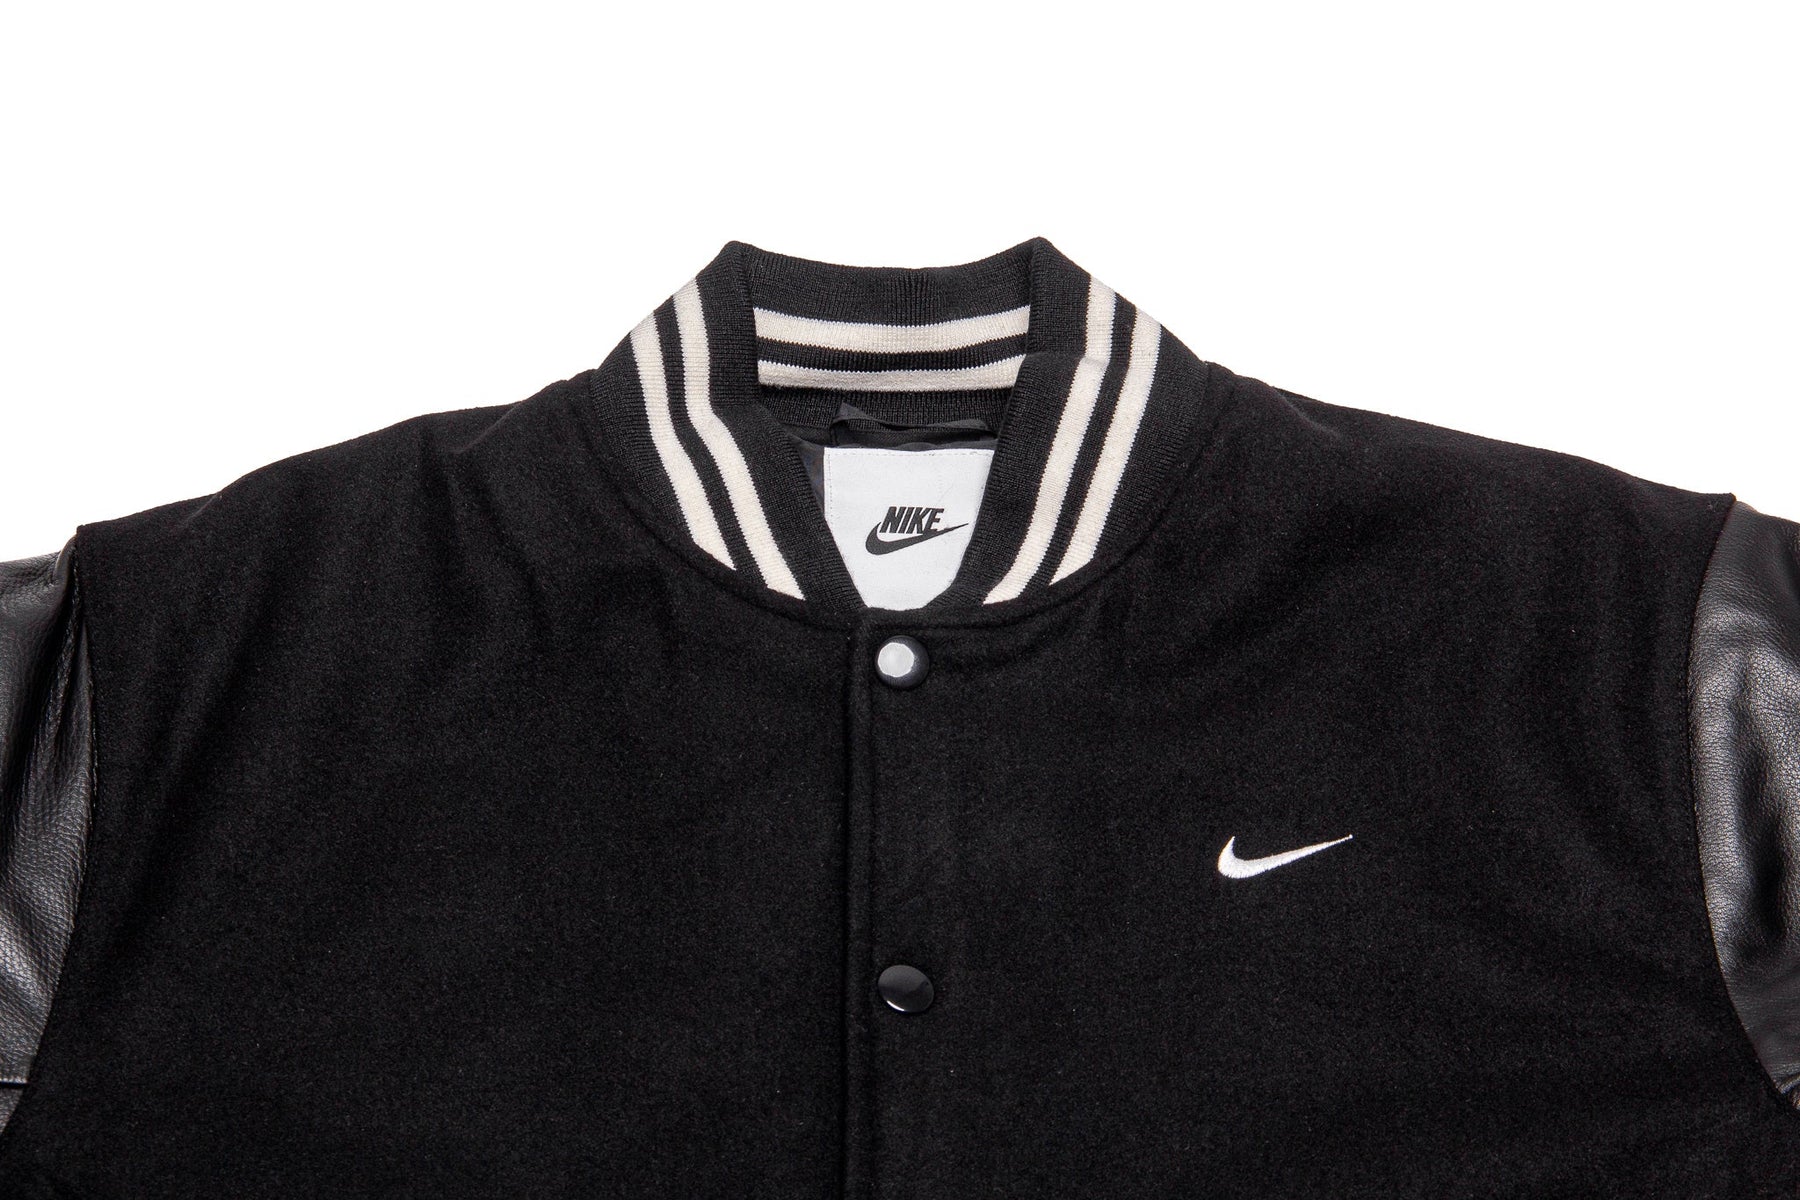 Nike Authentics Varsity Jacket "Black"